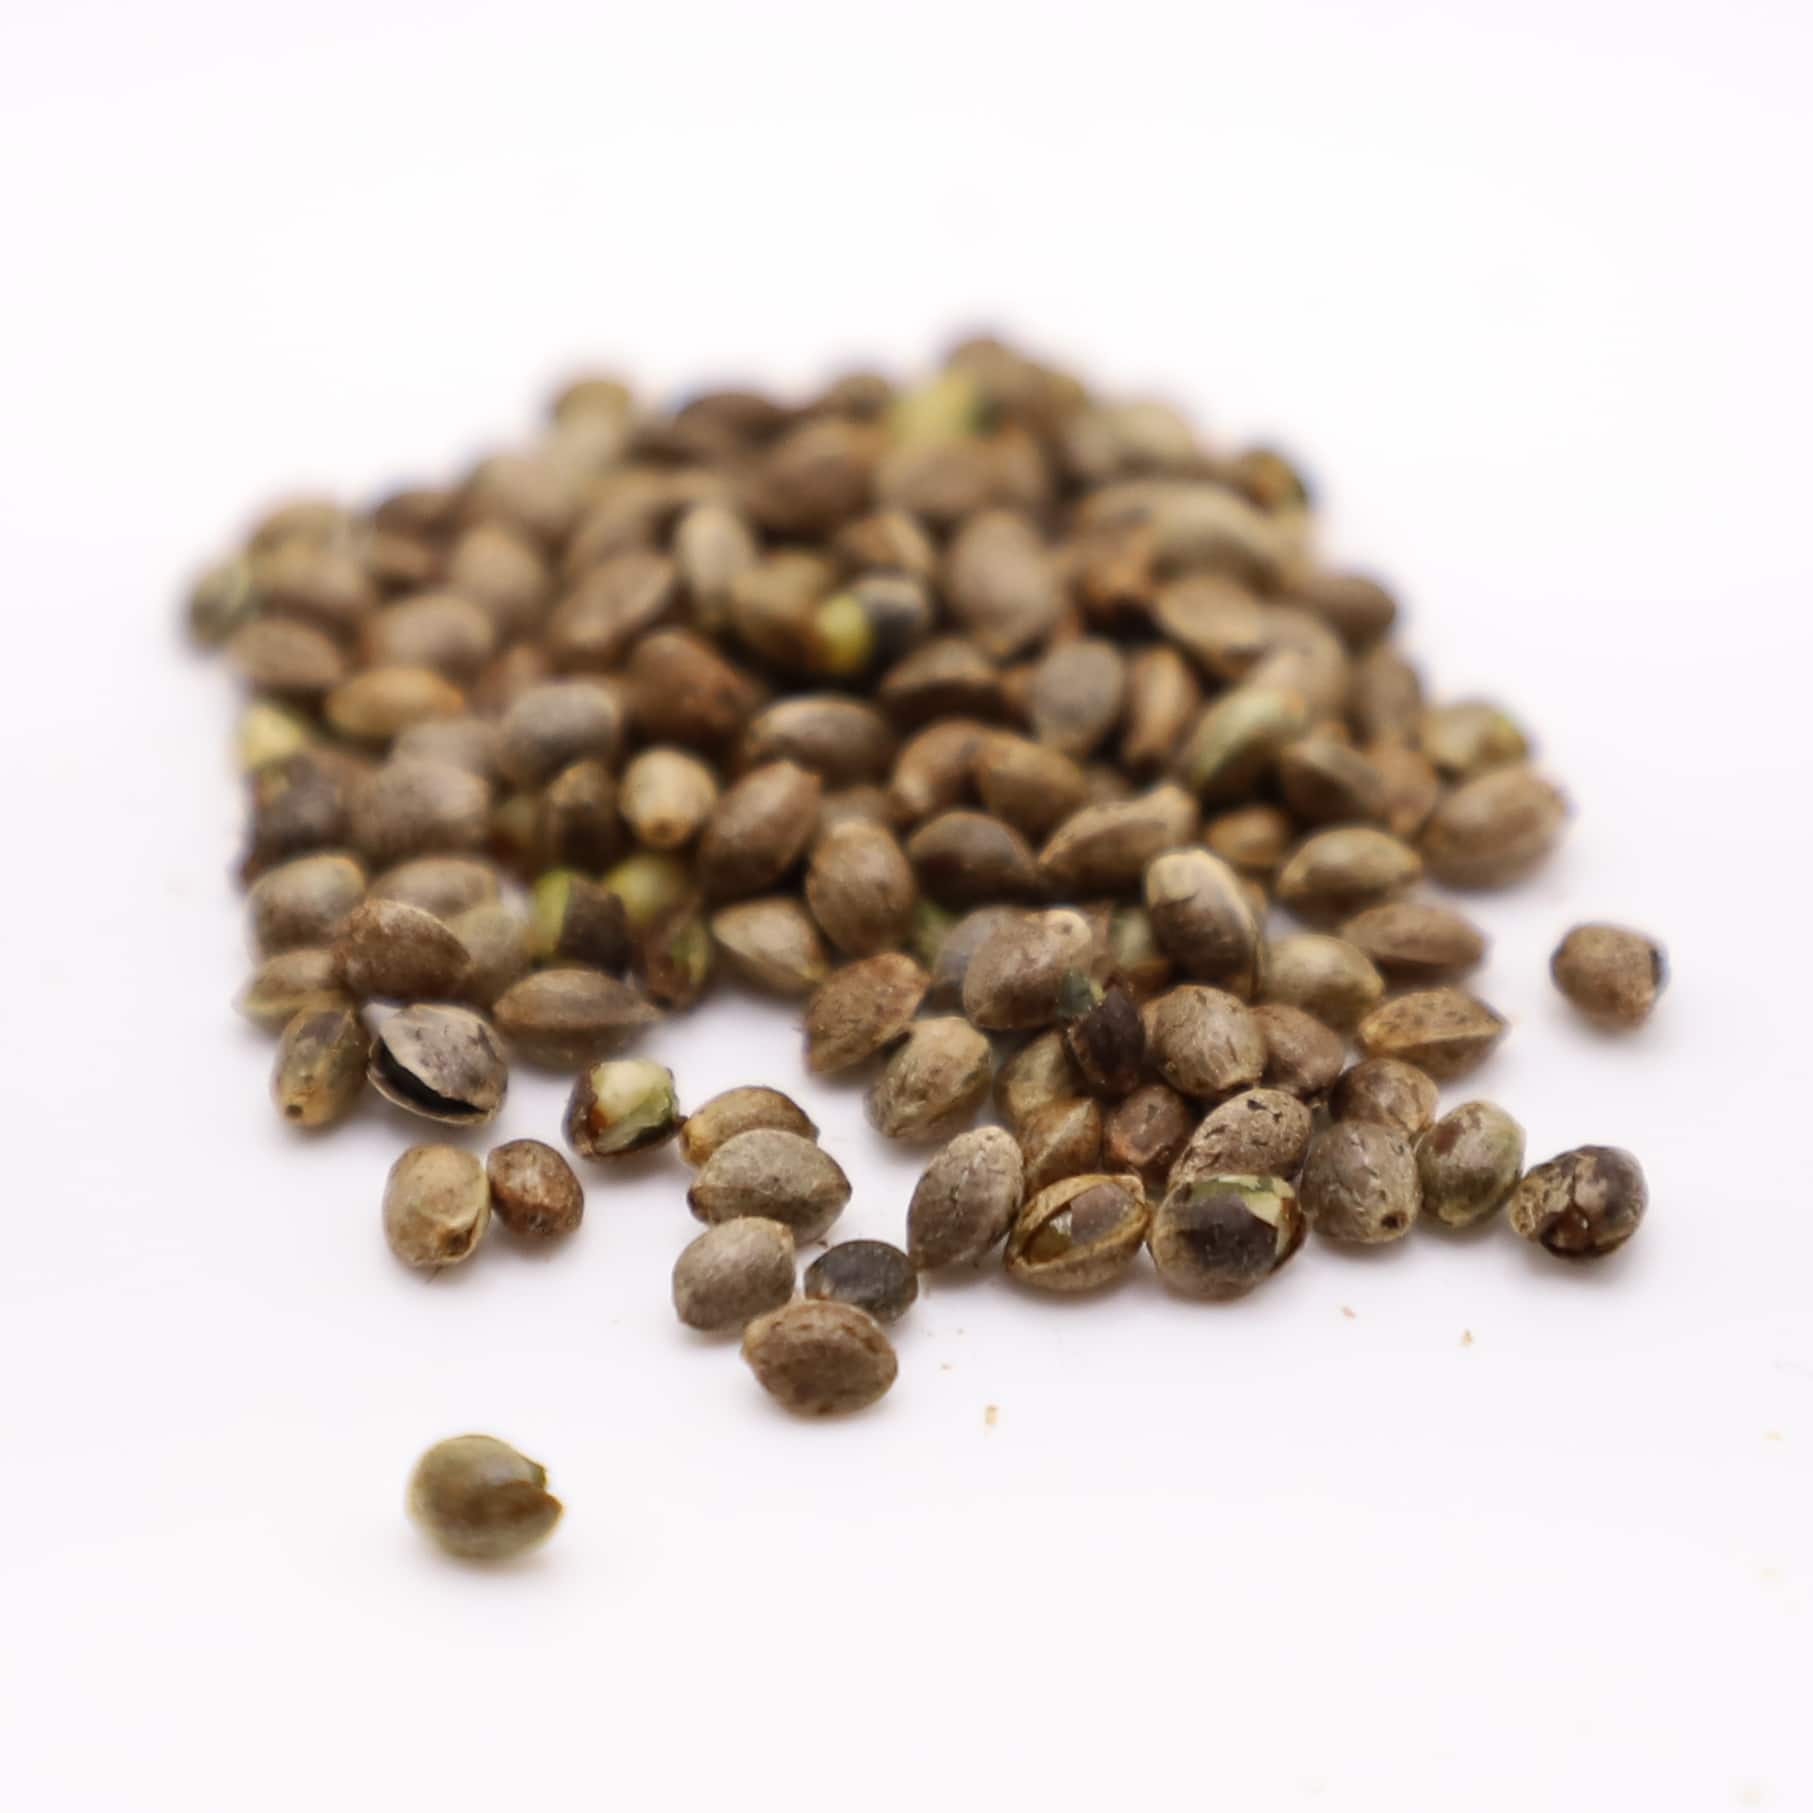 Featured image for “Finola Grain/Fiber Hemp Seeds”